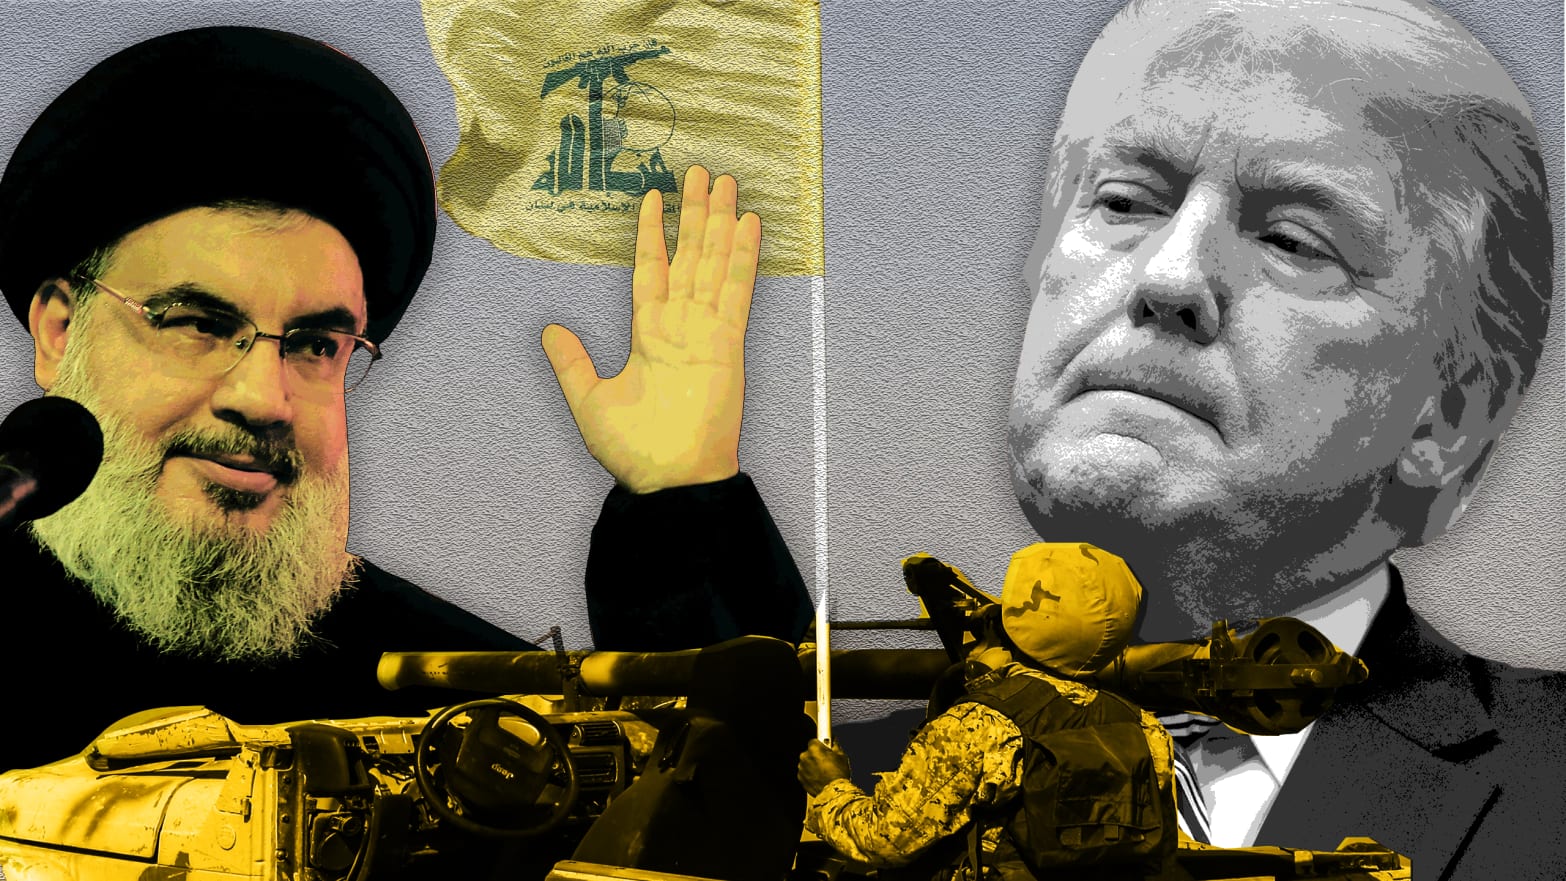 Soldados americanos voltarão aos EUA em caixões, diz Hezbollah